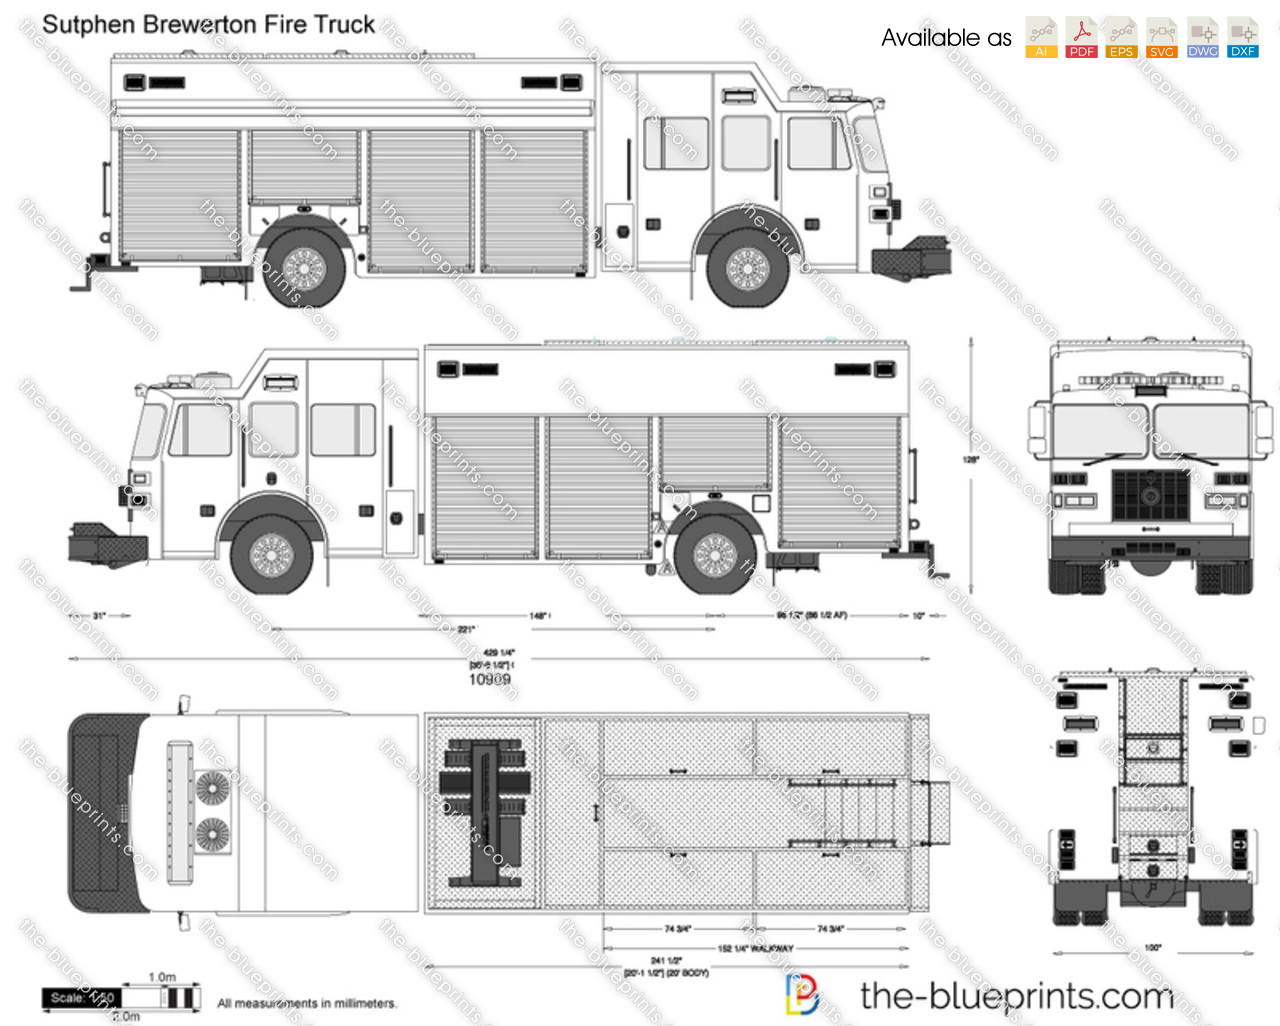 Sutphen Brewerton Fire Truck